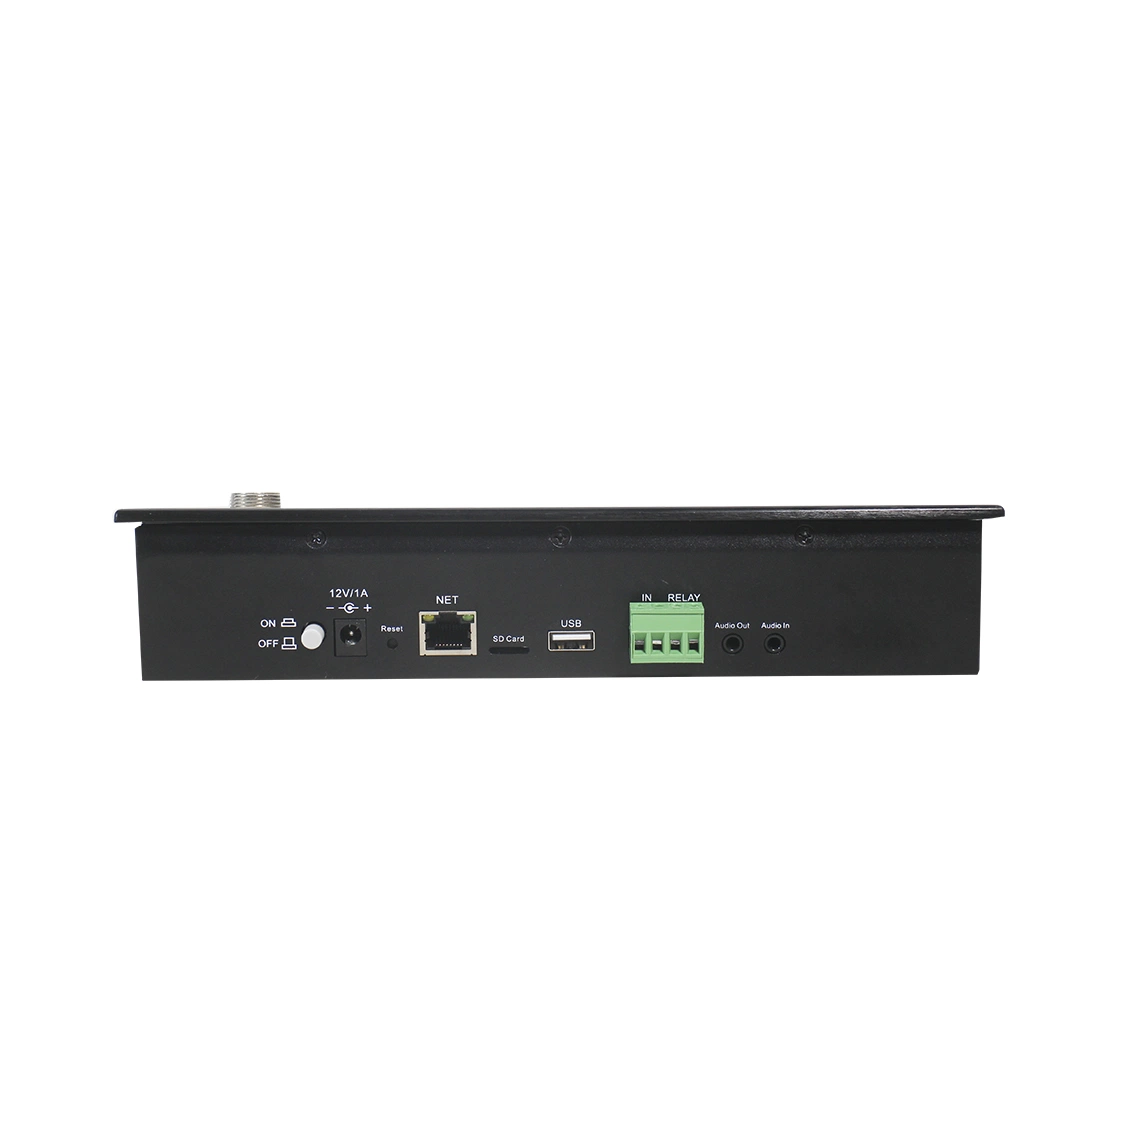 محطة تحكم IP/SIP مع نظام PA لشبكة SIP بشاشة تعمل باللمس ميكروفون النداء مع دعم الاتصال الداخلي دون اتصال